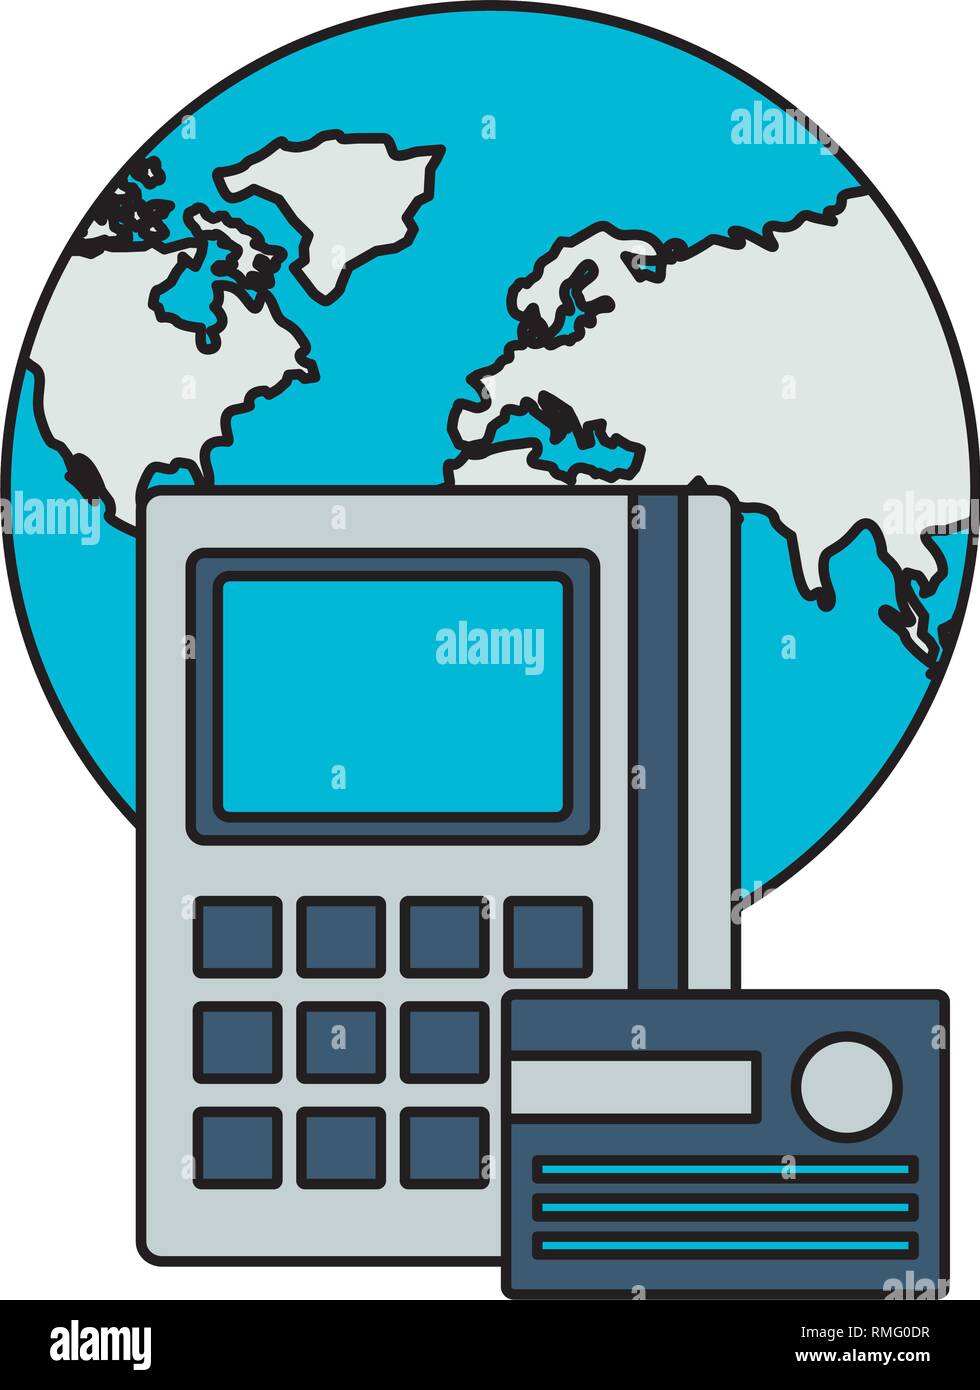 world calculator bank card stock market Stock Vector